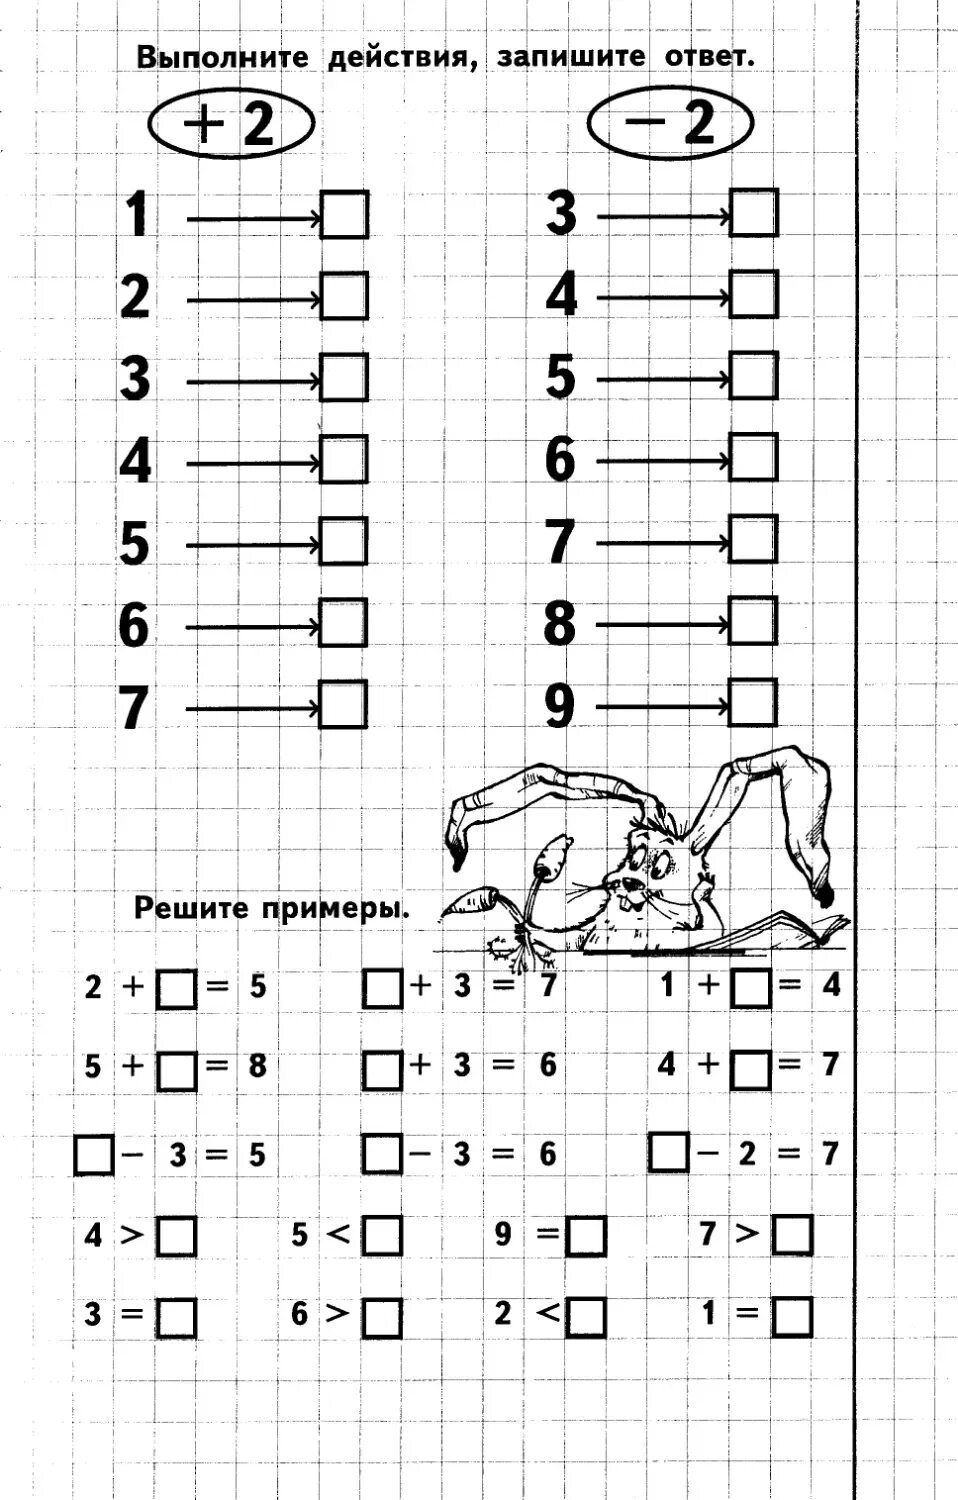 Задания для дошкольников по математике 6-7 лет решение примеров. Примеры для дошкольников 6-7 лет задания распечатать. Задания по математике для дошкольников примеры. Примеры и задачи для дошкольников 6-7 лет по математике распечатать. Тесты математика 7 лет